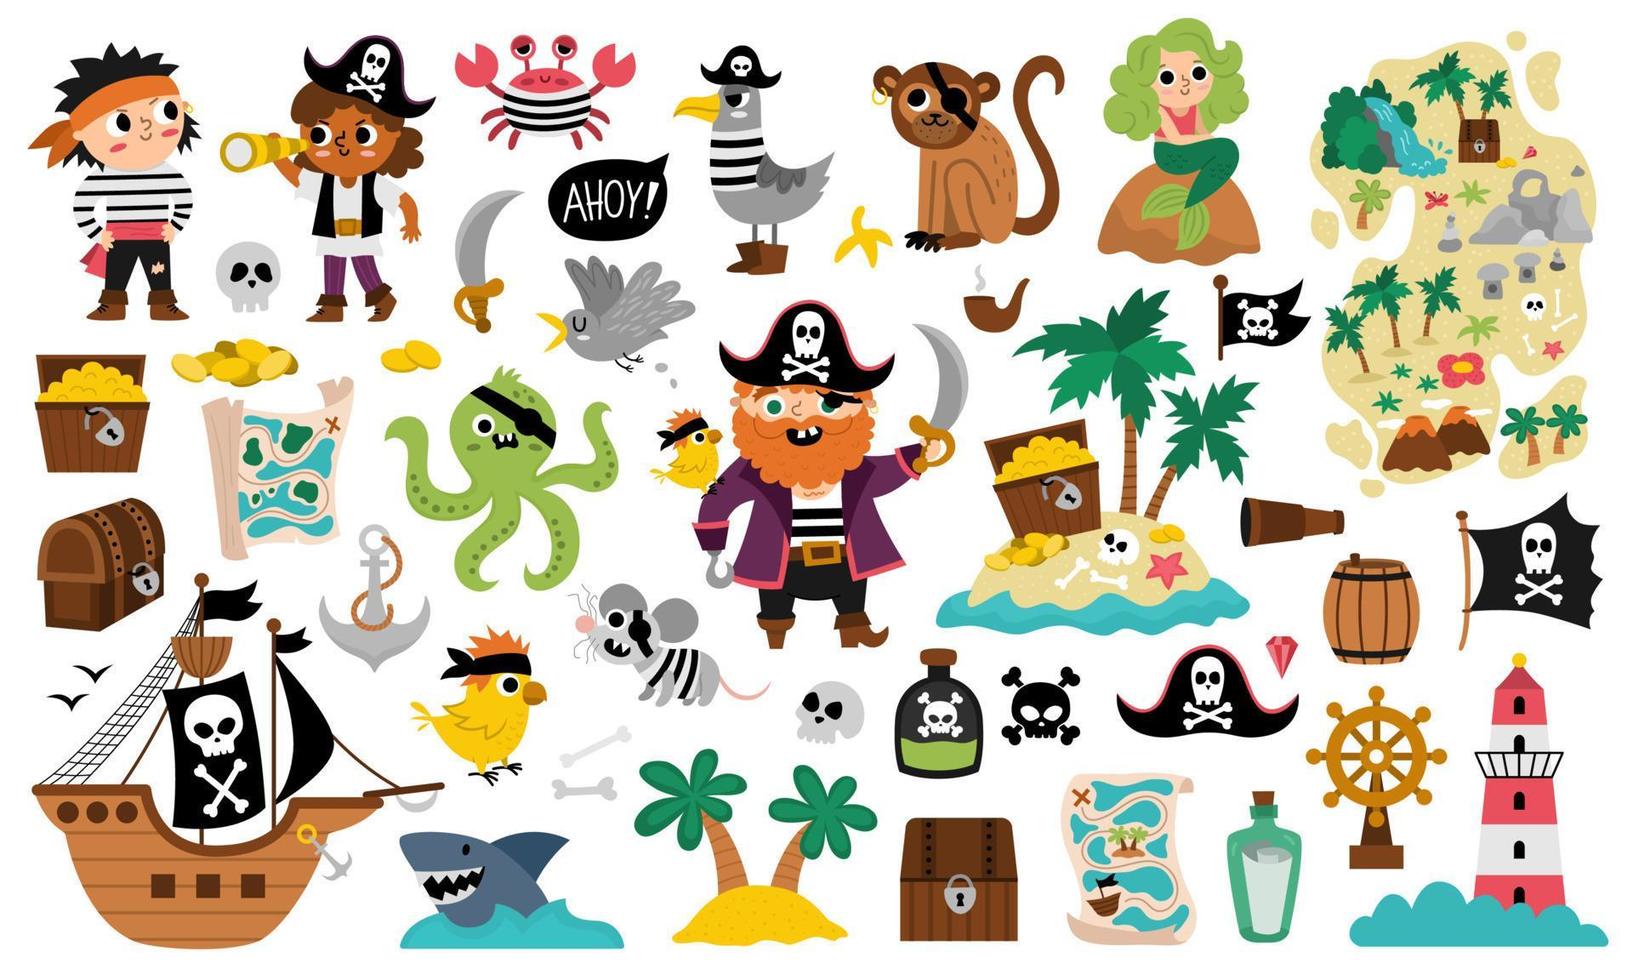 vettore pirata impostare. carino mare avventure icone collezione. Tesoro isola illustrazioni con nave, Capitano, marinai, il petto, carta geografica, pappagallo, scimmia, carta geografica. divertente pirata festa elementi per bambini.